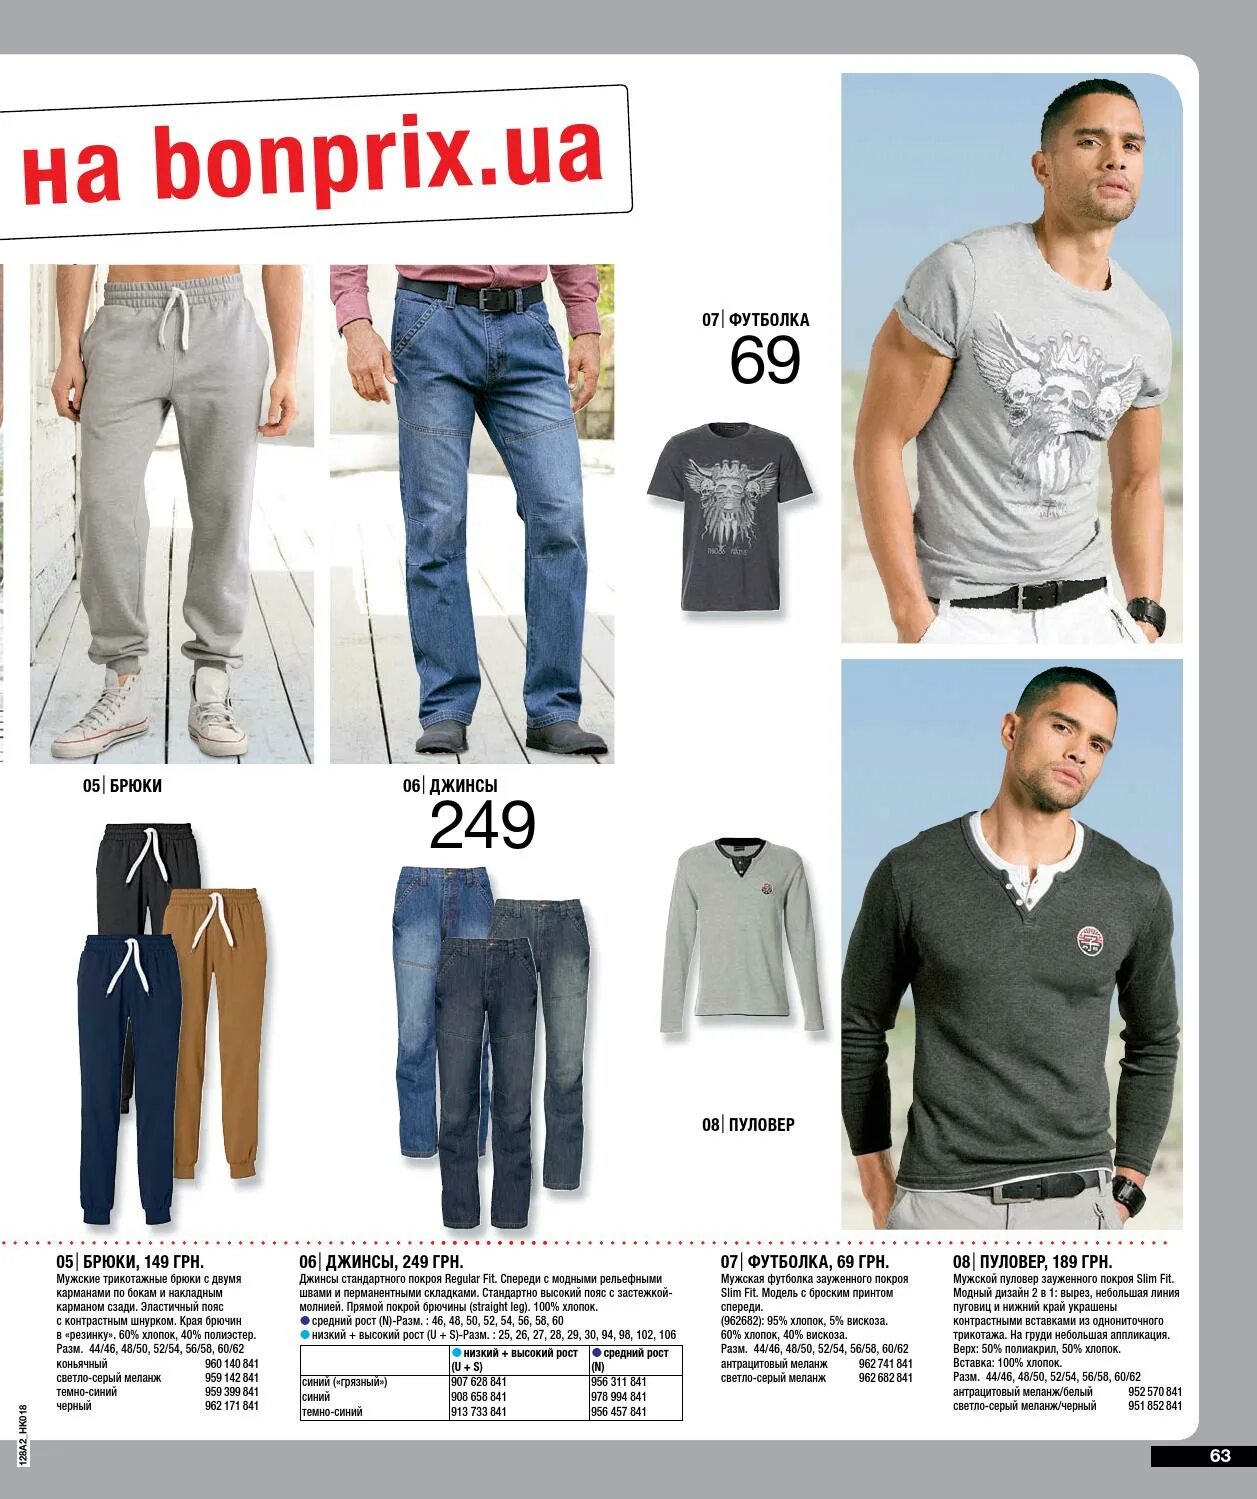 Каталог мужской одежды. Bonprix интернет магазин одежды для мужчин. Мужская одежда каталог товаров. Бонприкс мужская одежда.